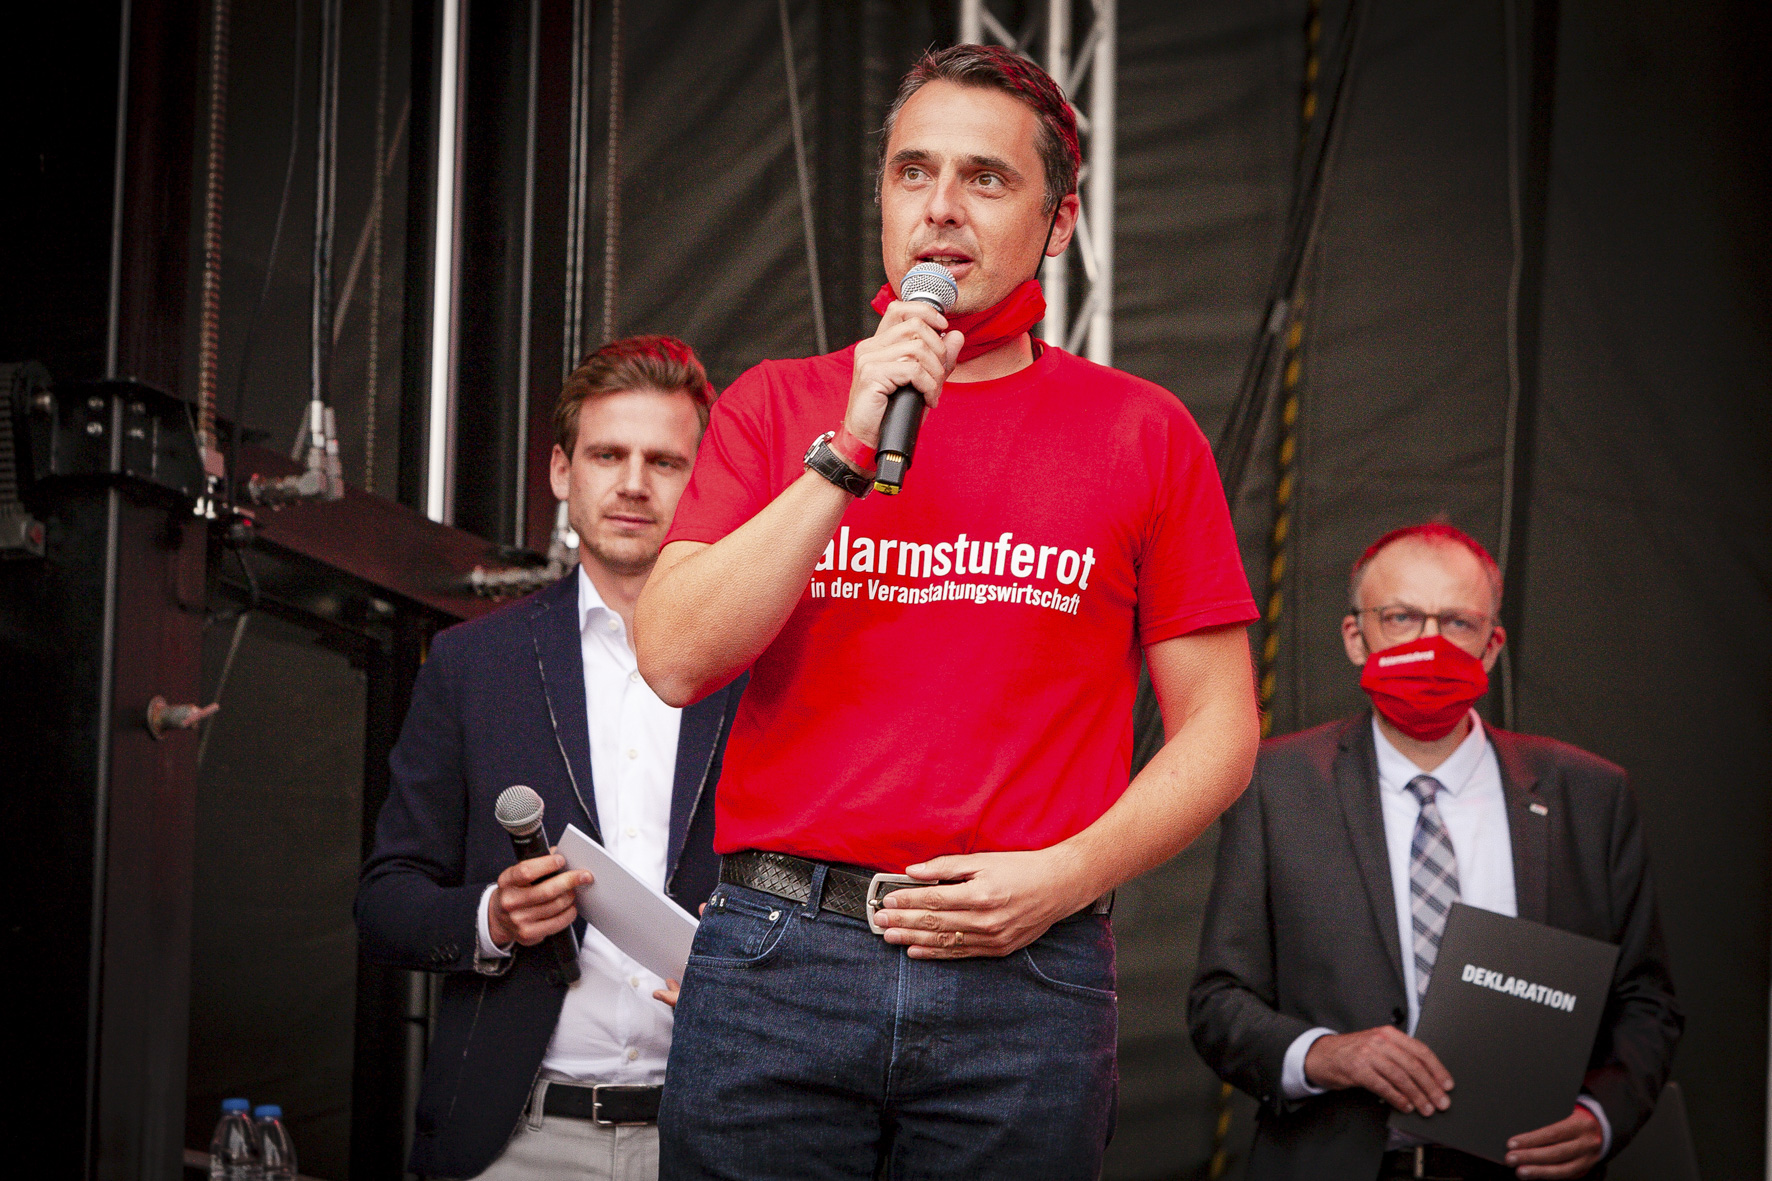 Christian Eichenberger ist Mit-Initiator von #AlarmstufeRot